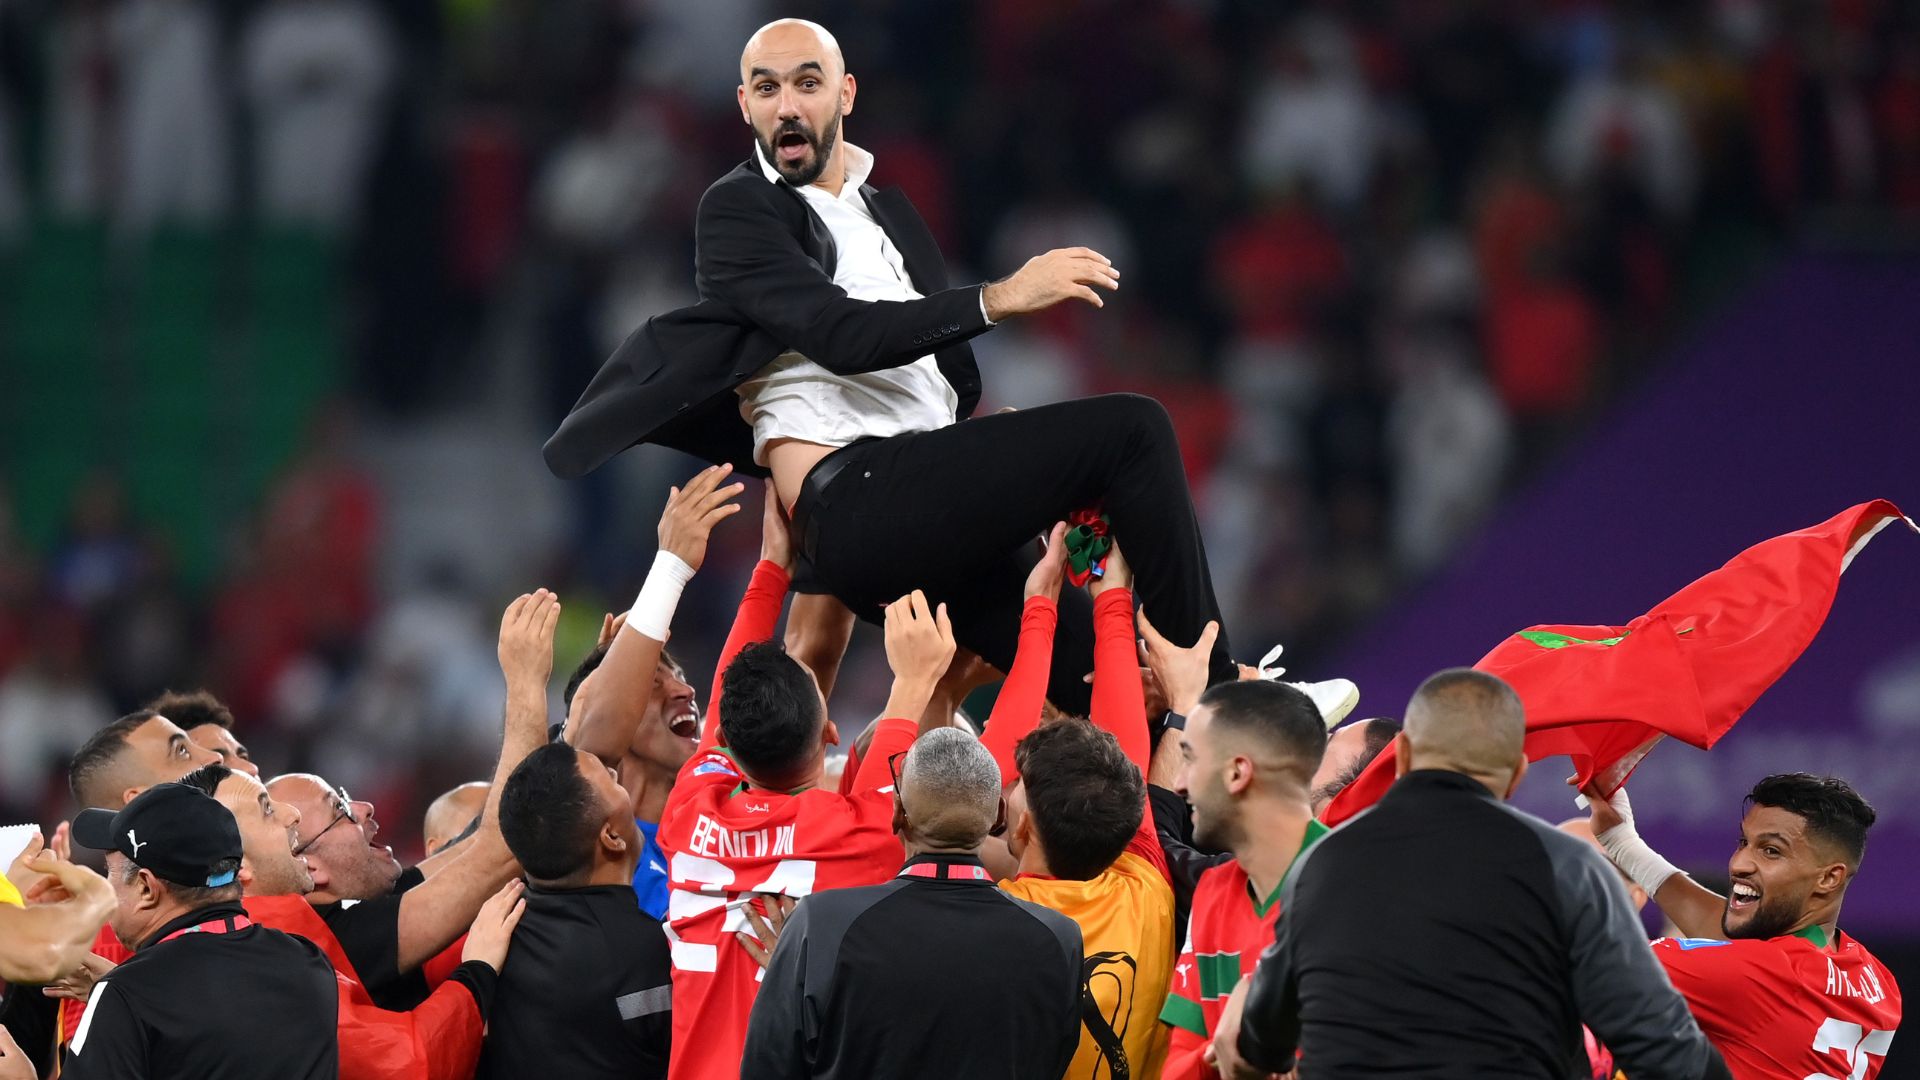 Marrocos avança na Copa fazendo o que o Brasil não faz: eliminando europeus  - 10/12/2022 - UOL Esporte